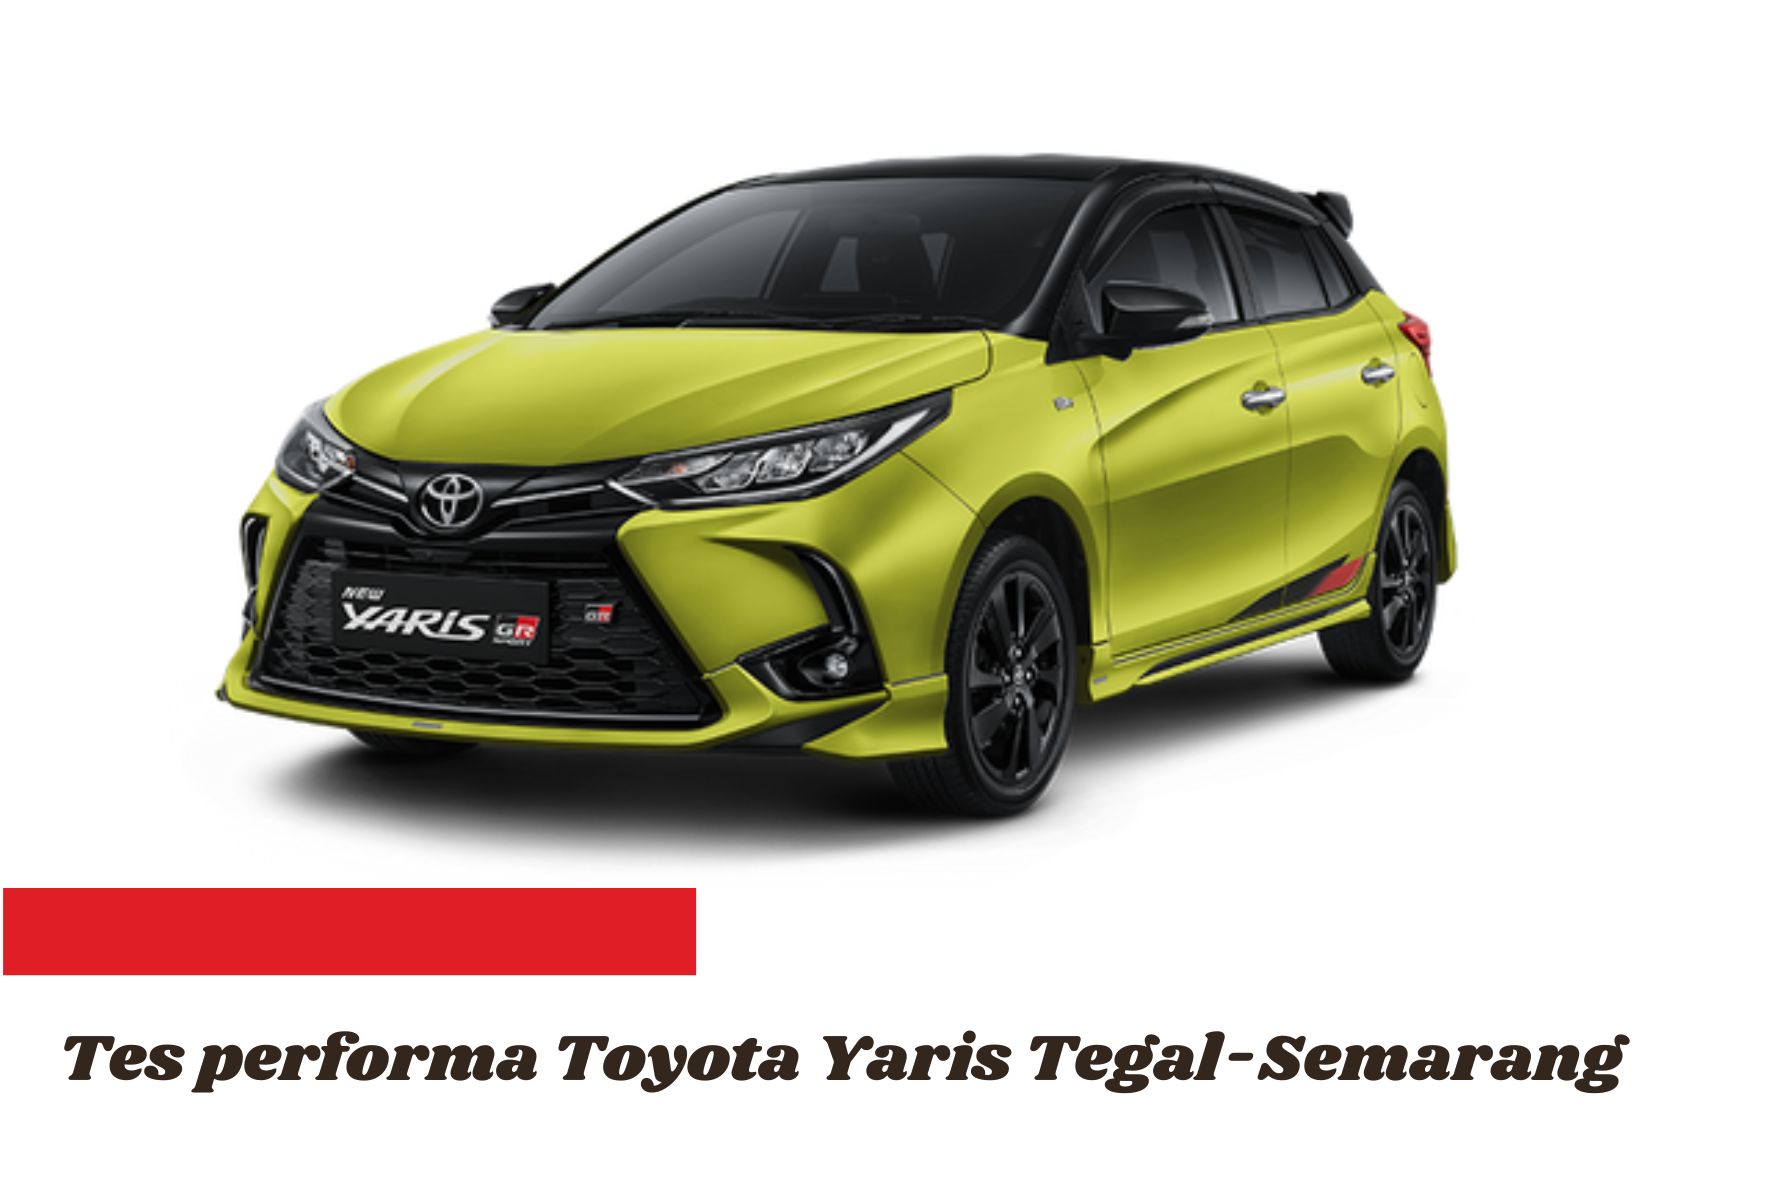 Tes Performa Toyota Yaris Menjelajahi Pantura Semarang-Tegal, Seliter Bisa 28 Kilometer